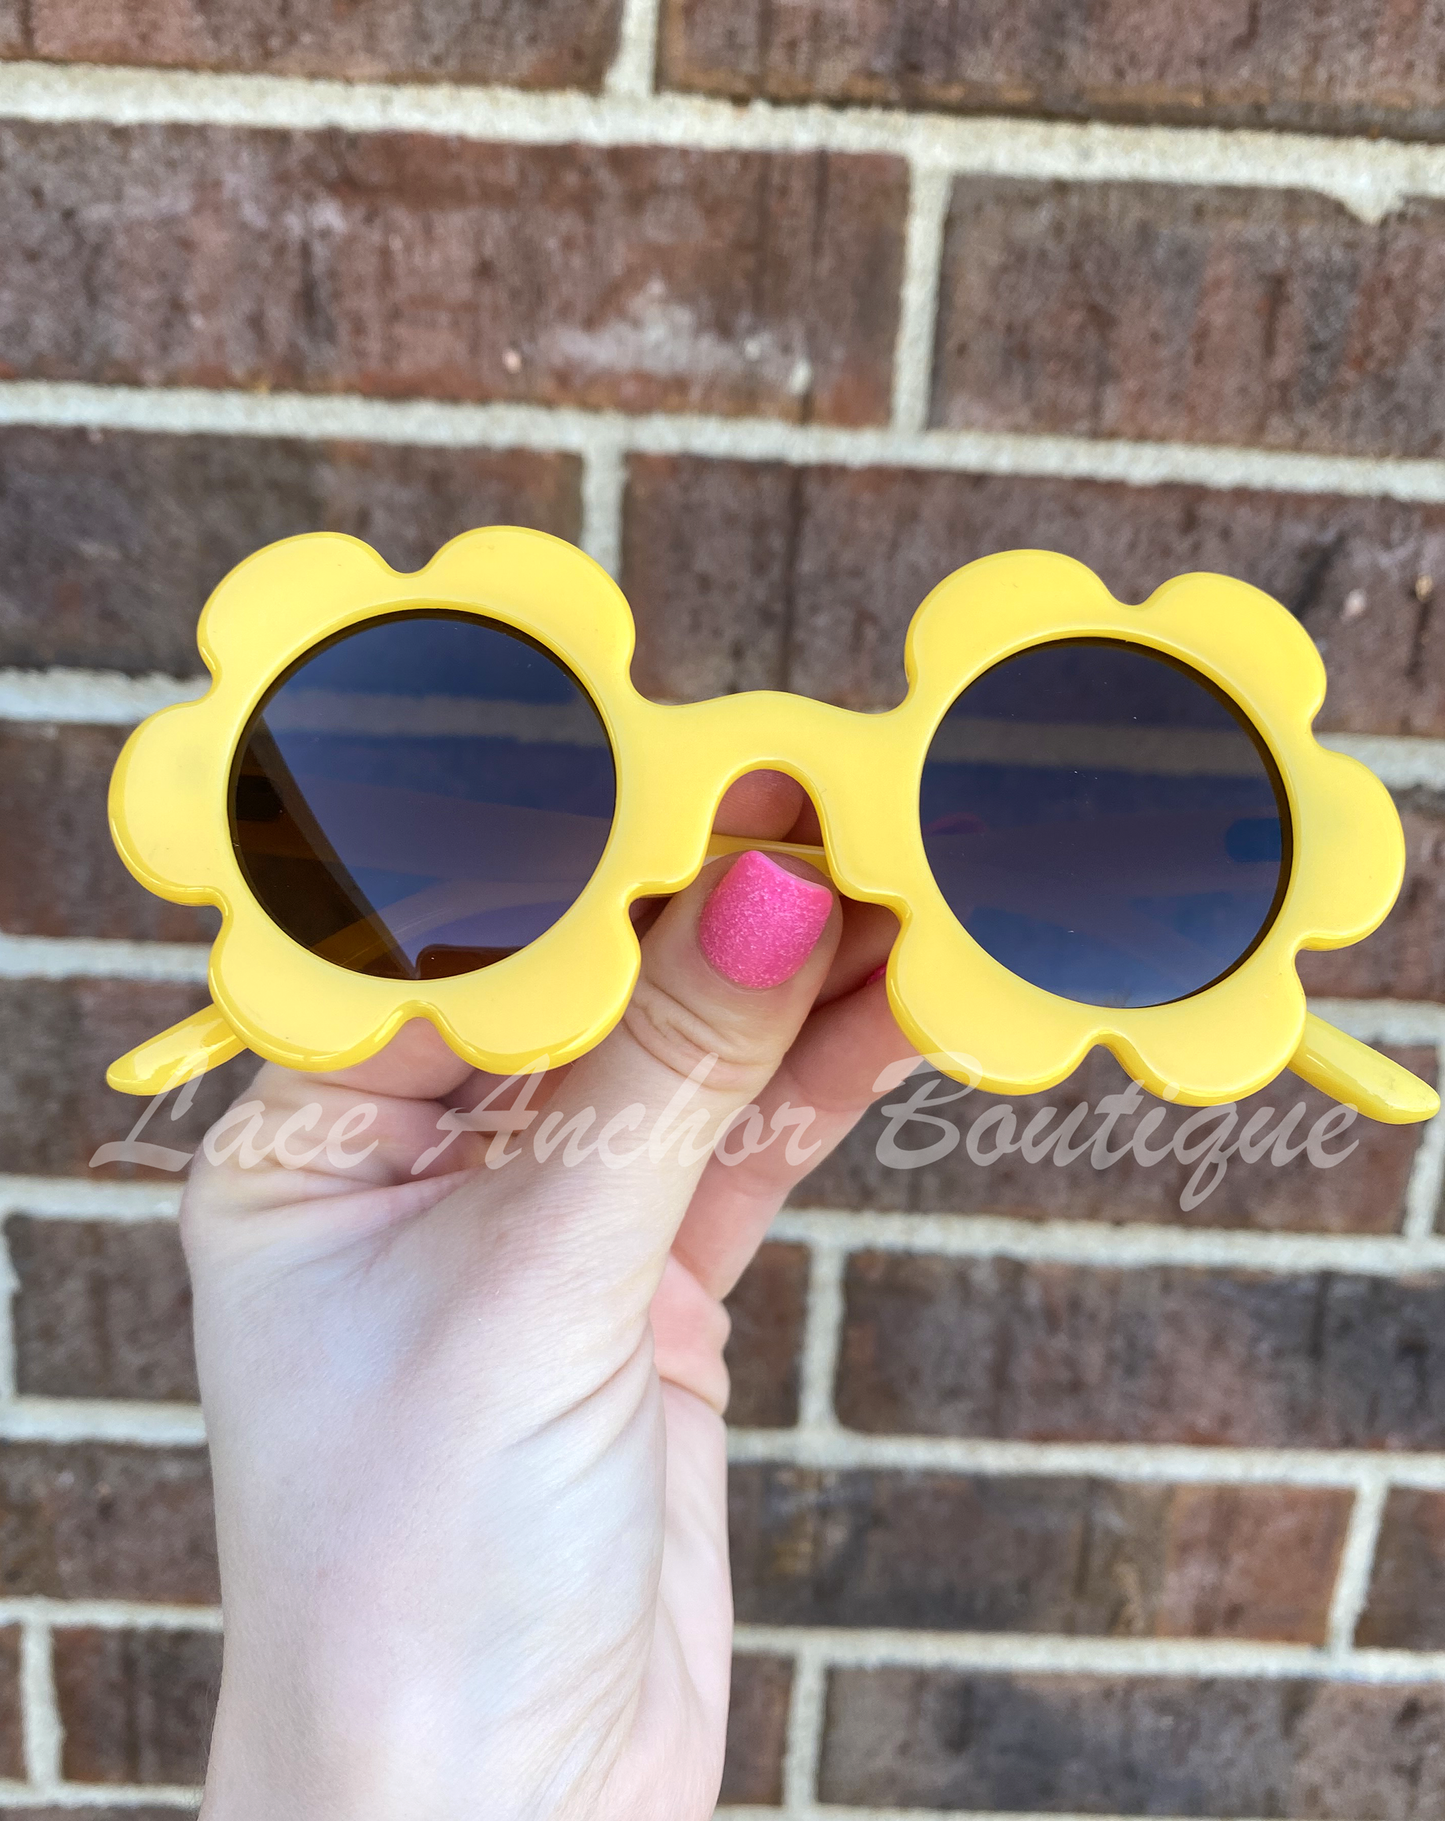 Gafas de sol para niños